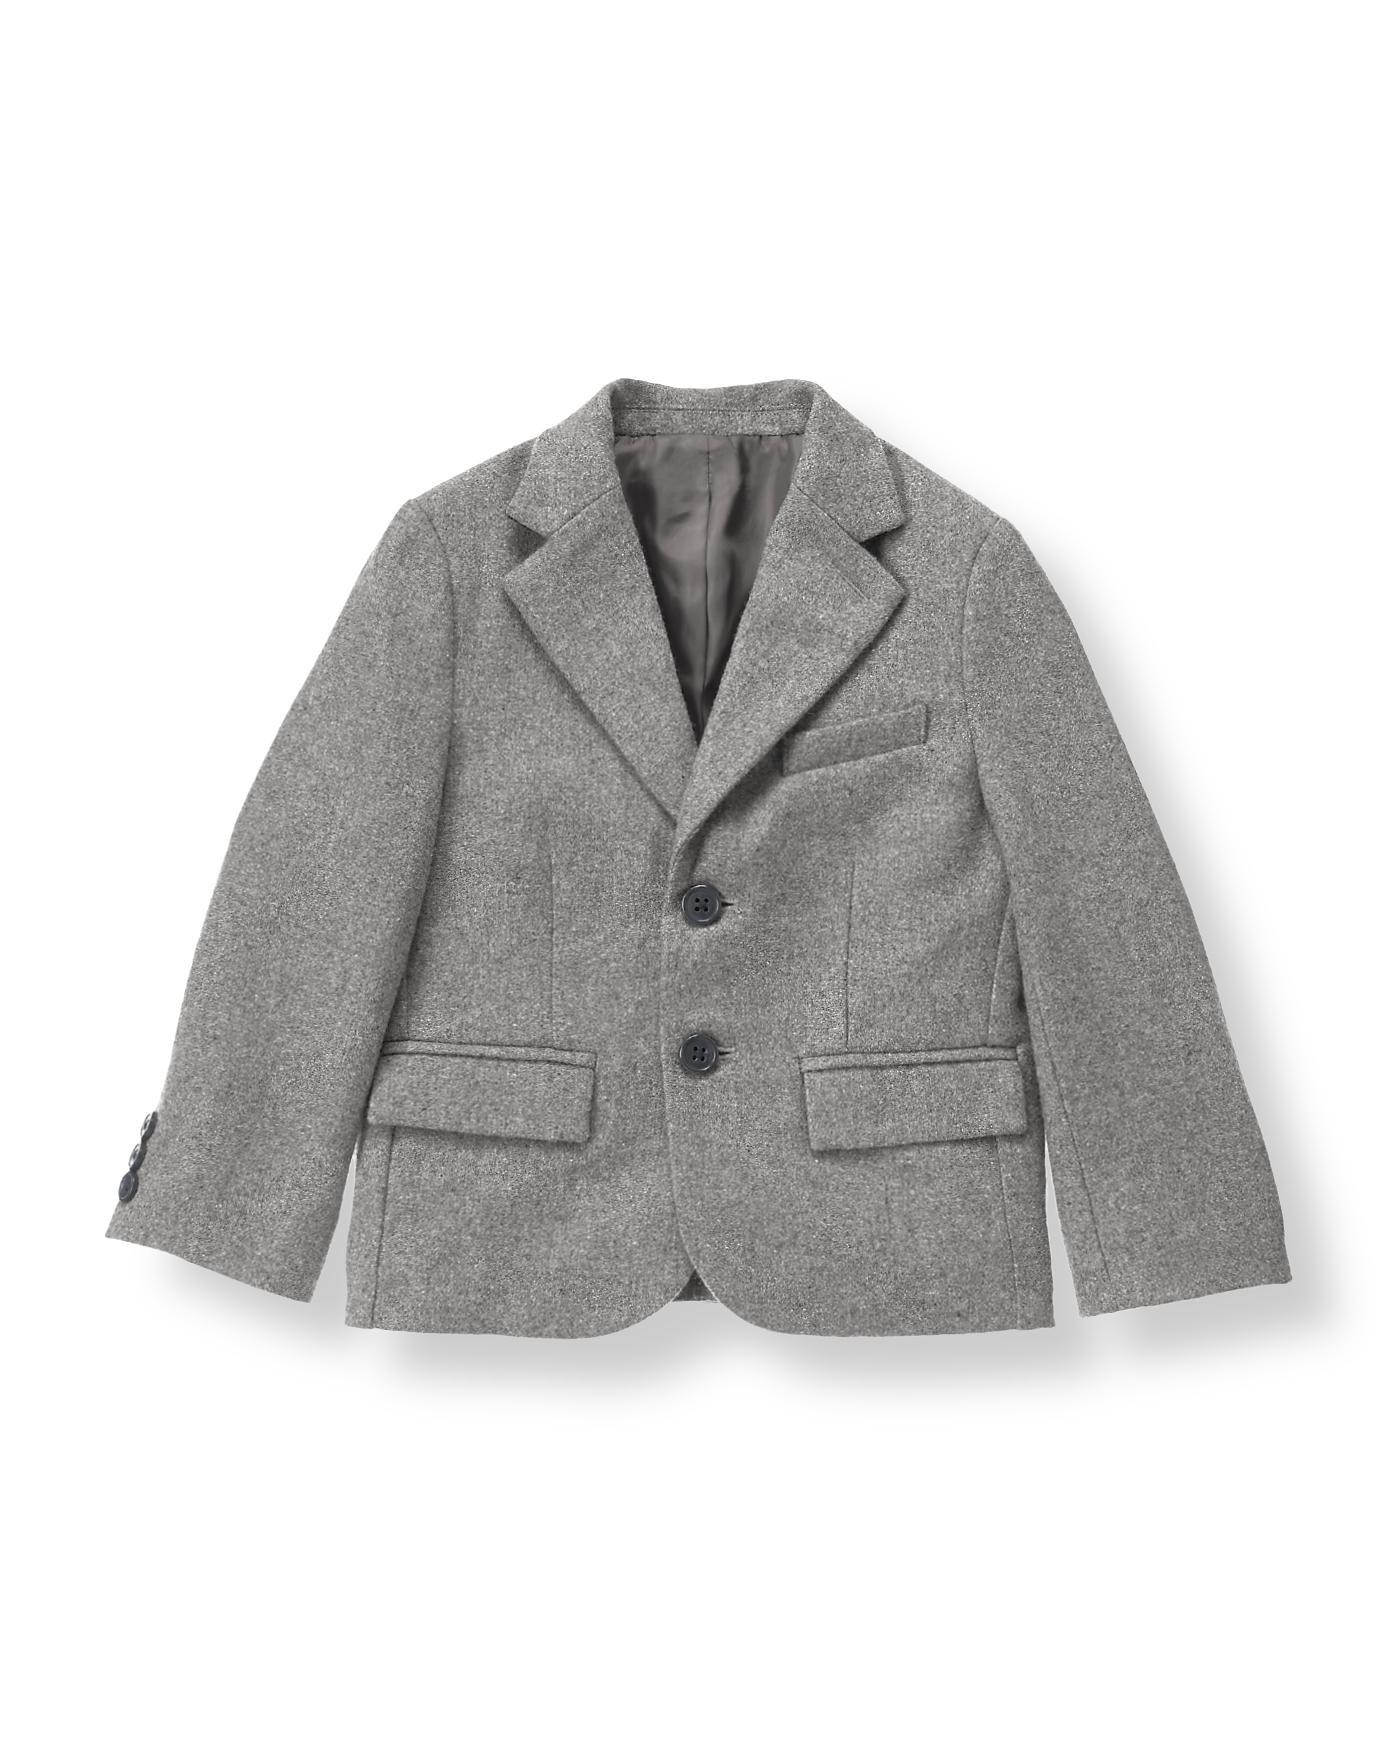 Boy Heather Grey Wool Blend Suit Blazer by Janie and Jack